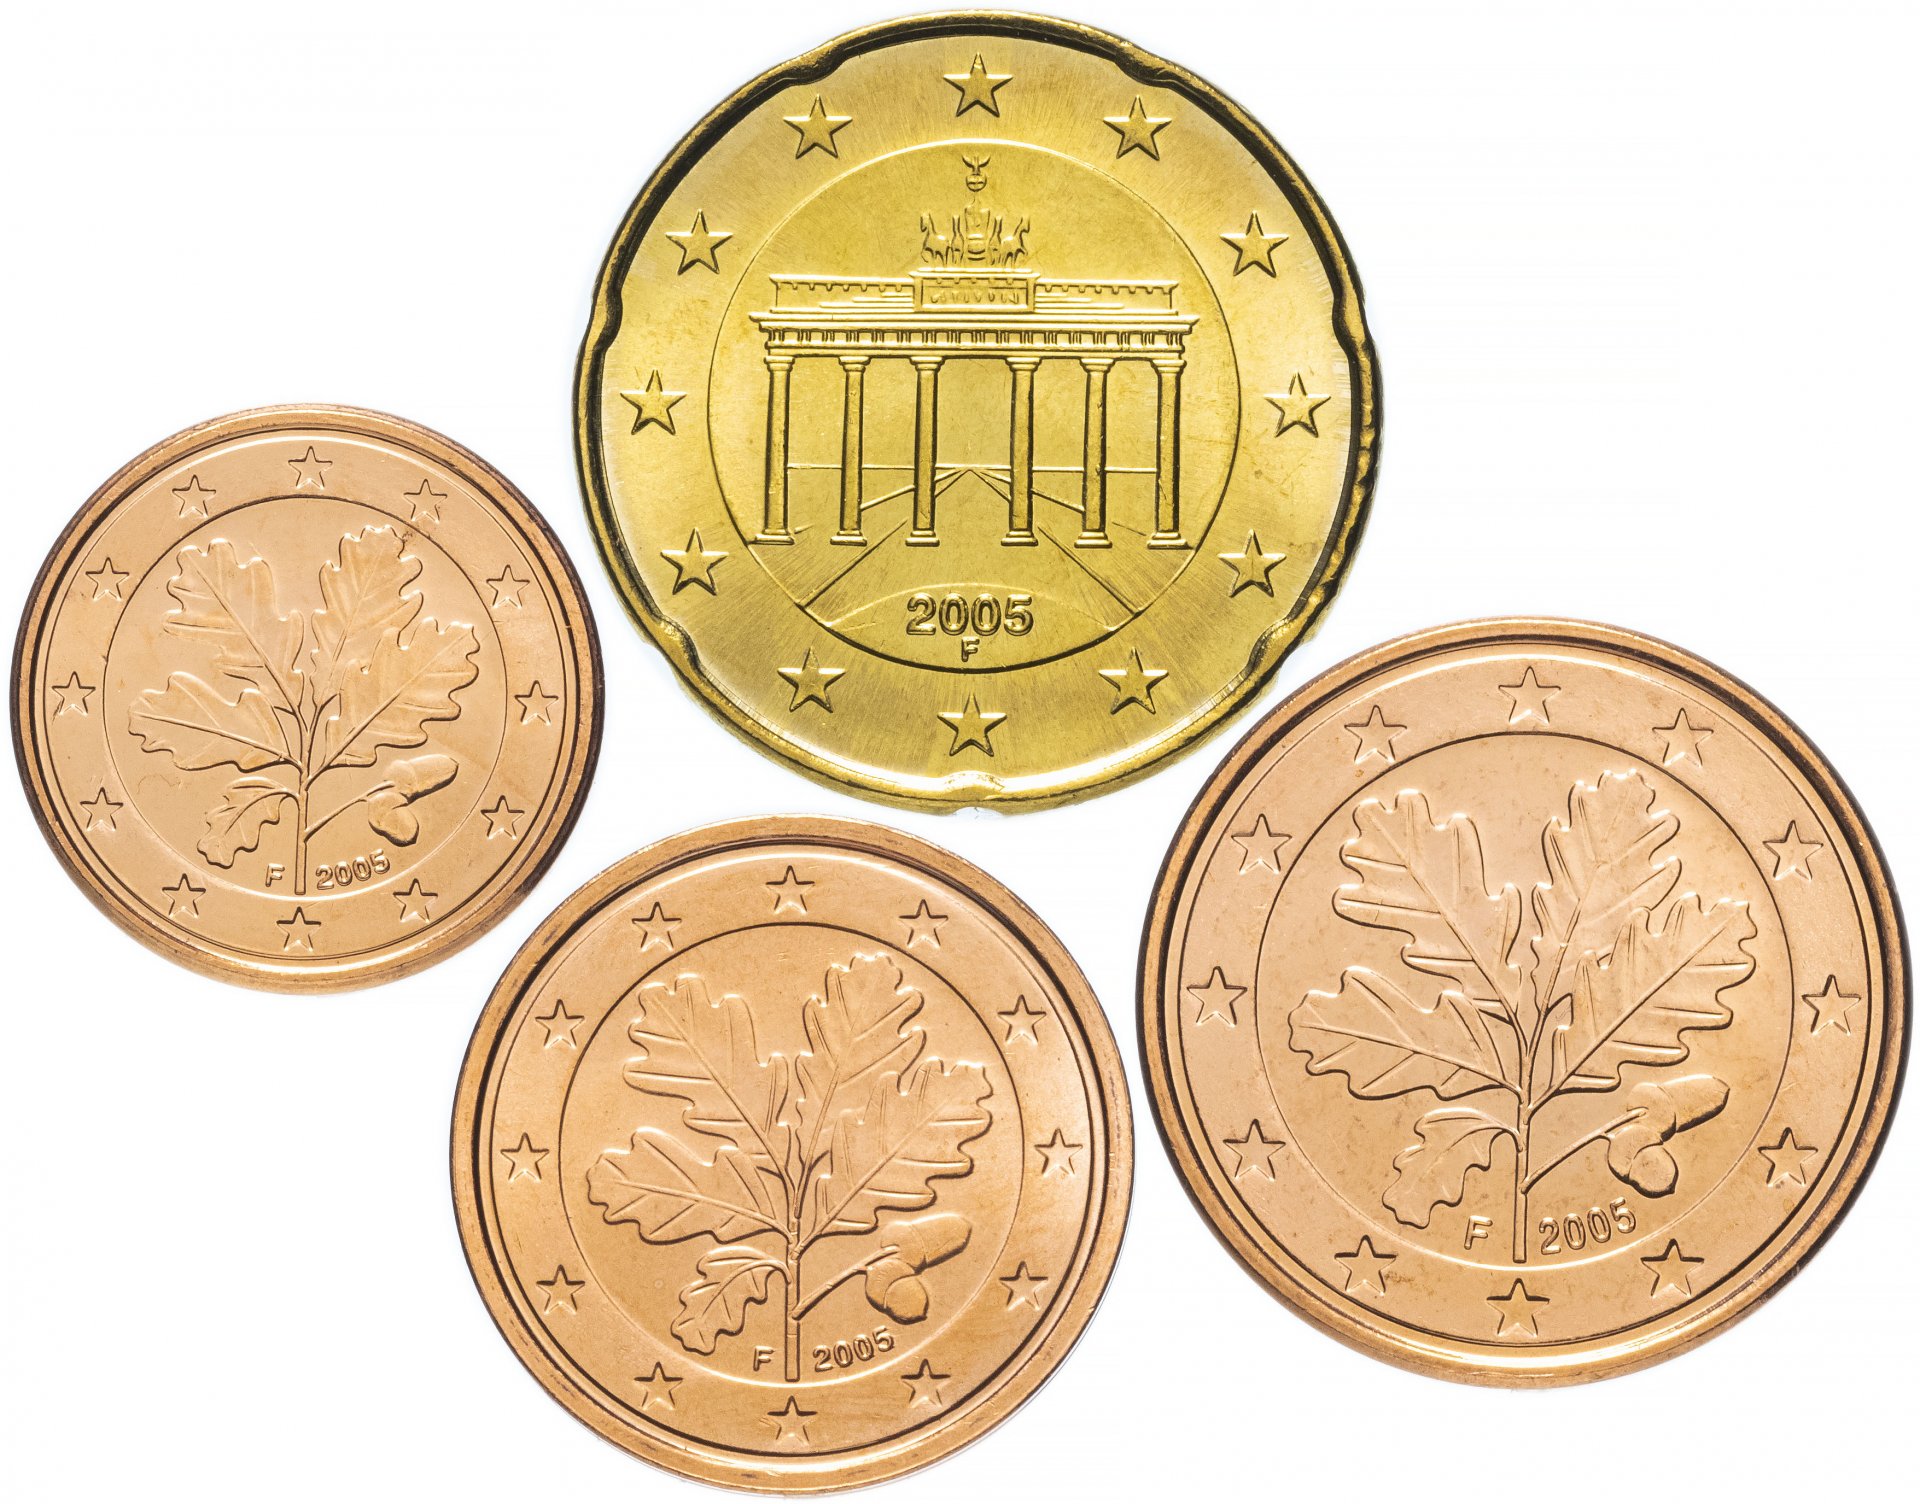 Купить монеты в монетнике в москве. 20 Eurocent 2005 монеты. Монеты магазин монетник. Нумизматический набор монет. Германские монеты.